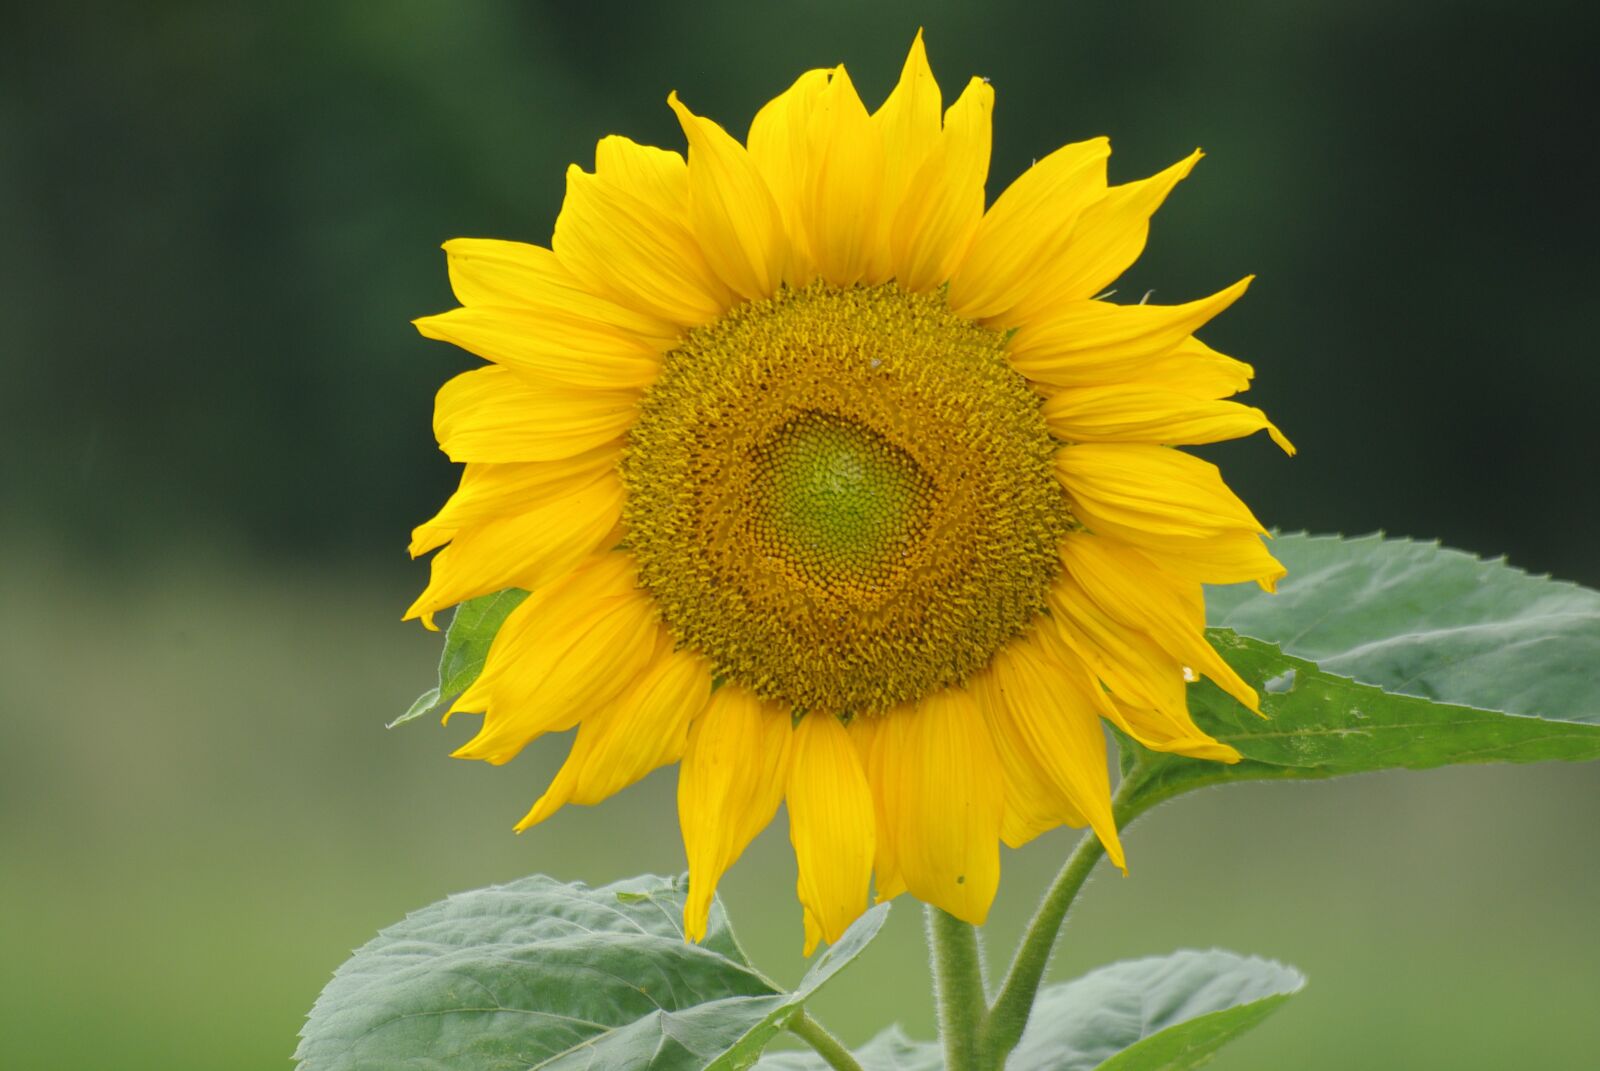 Pentax K200D sample photo. Sunflower, flower, yellow flower photography